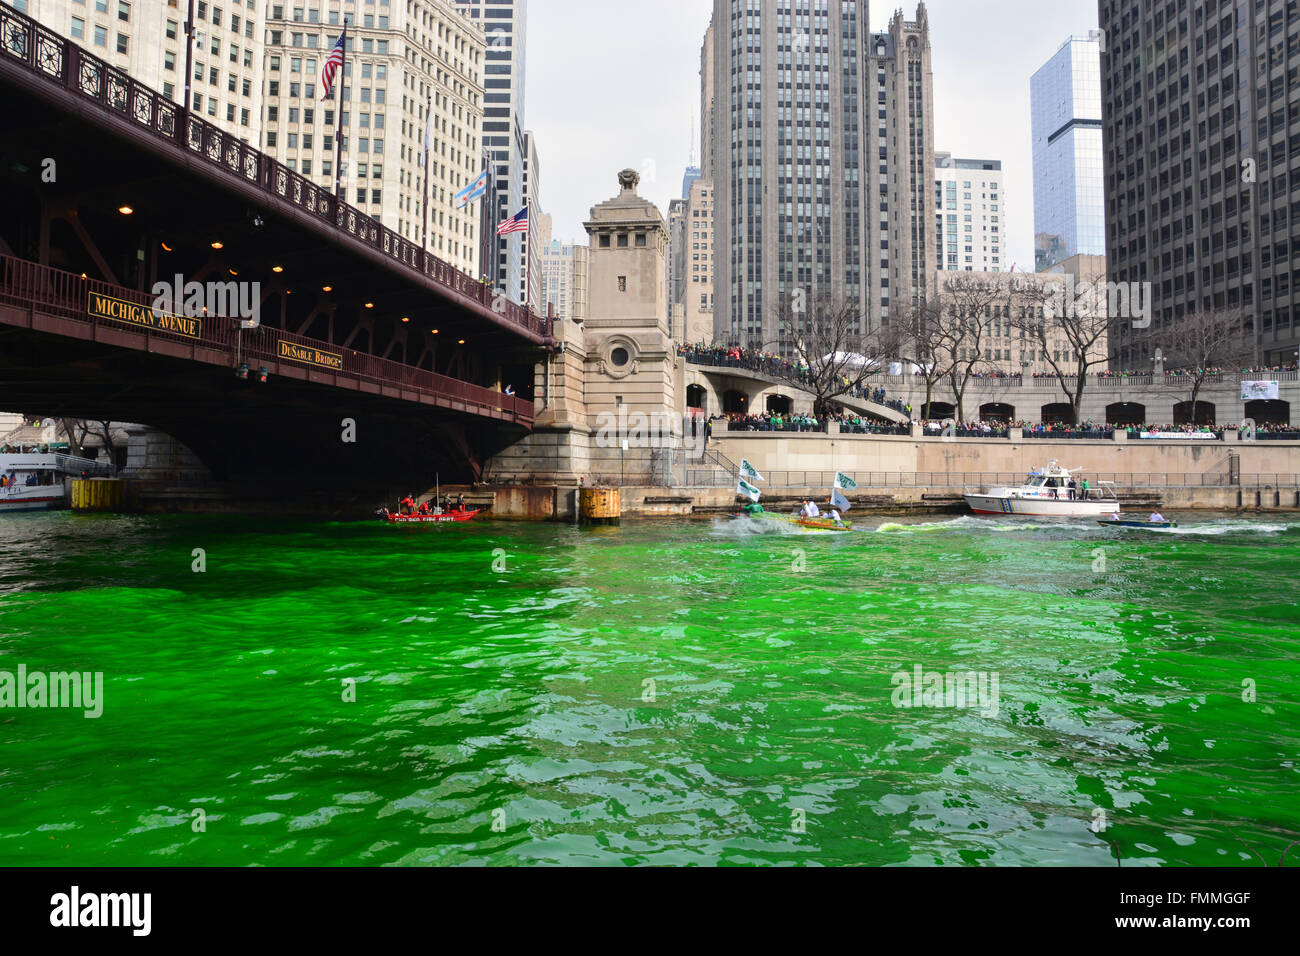 Die Klempner Union jährlich Farbstoffe den Chicago Fluss grn für St. Patrick's Day, 12. März 2016 Stockfoto